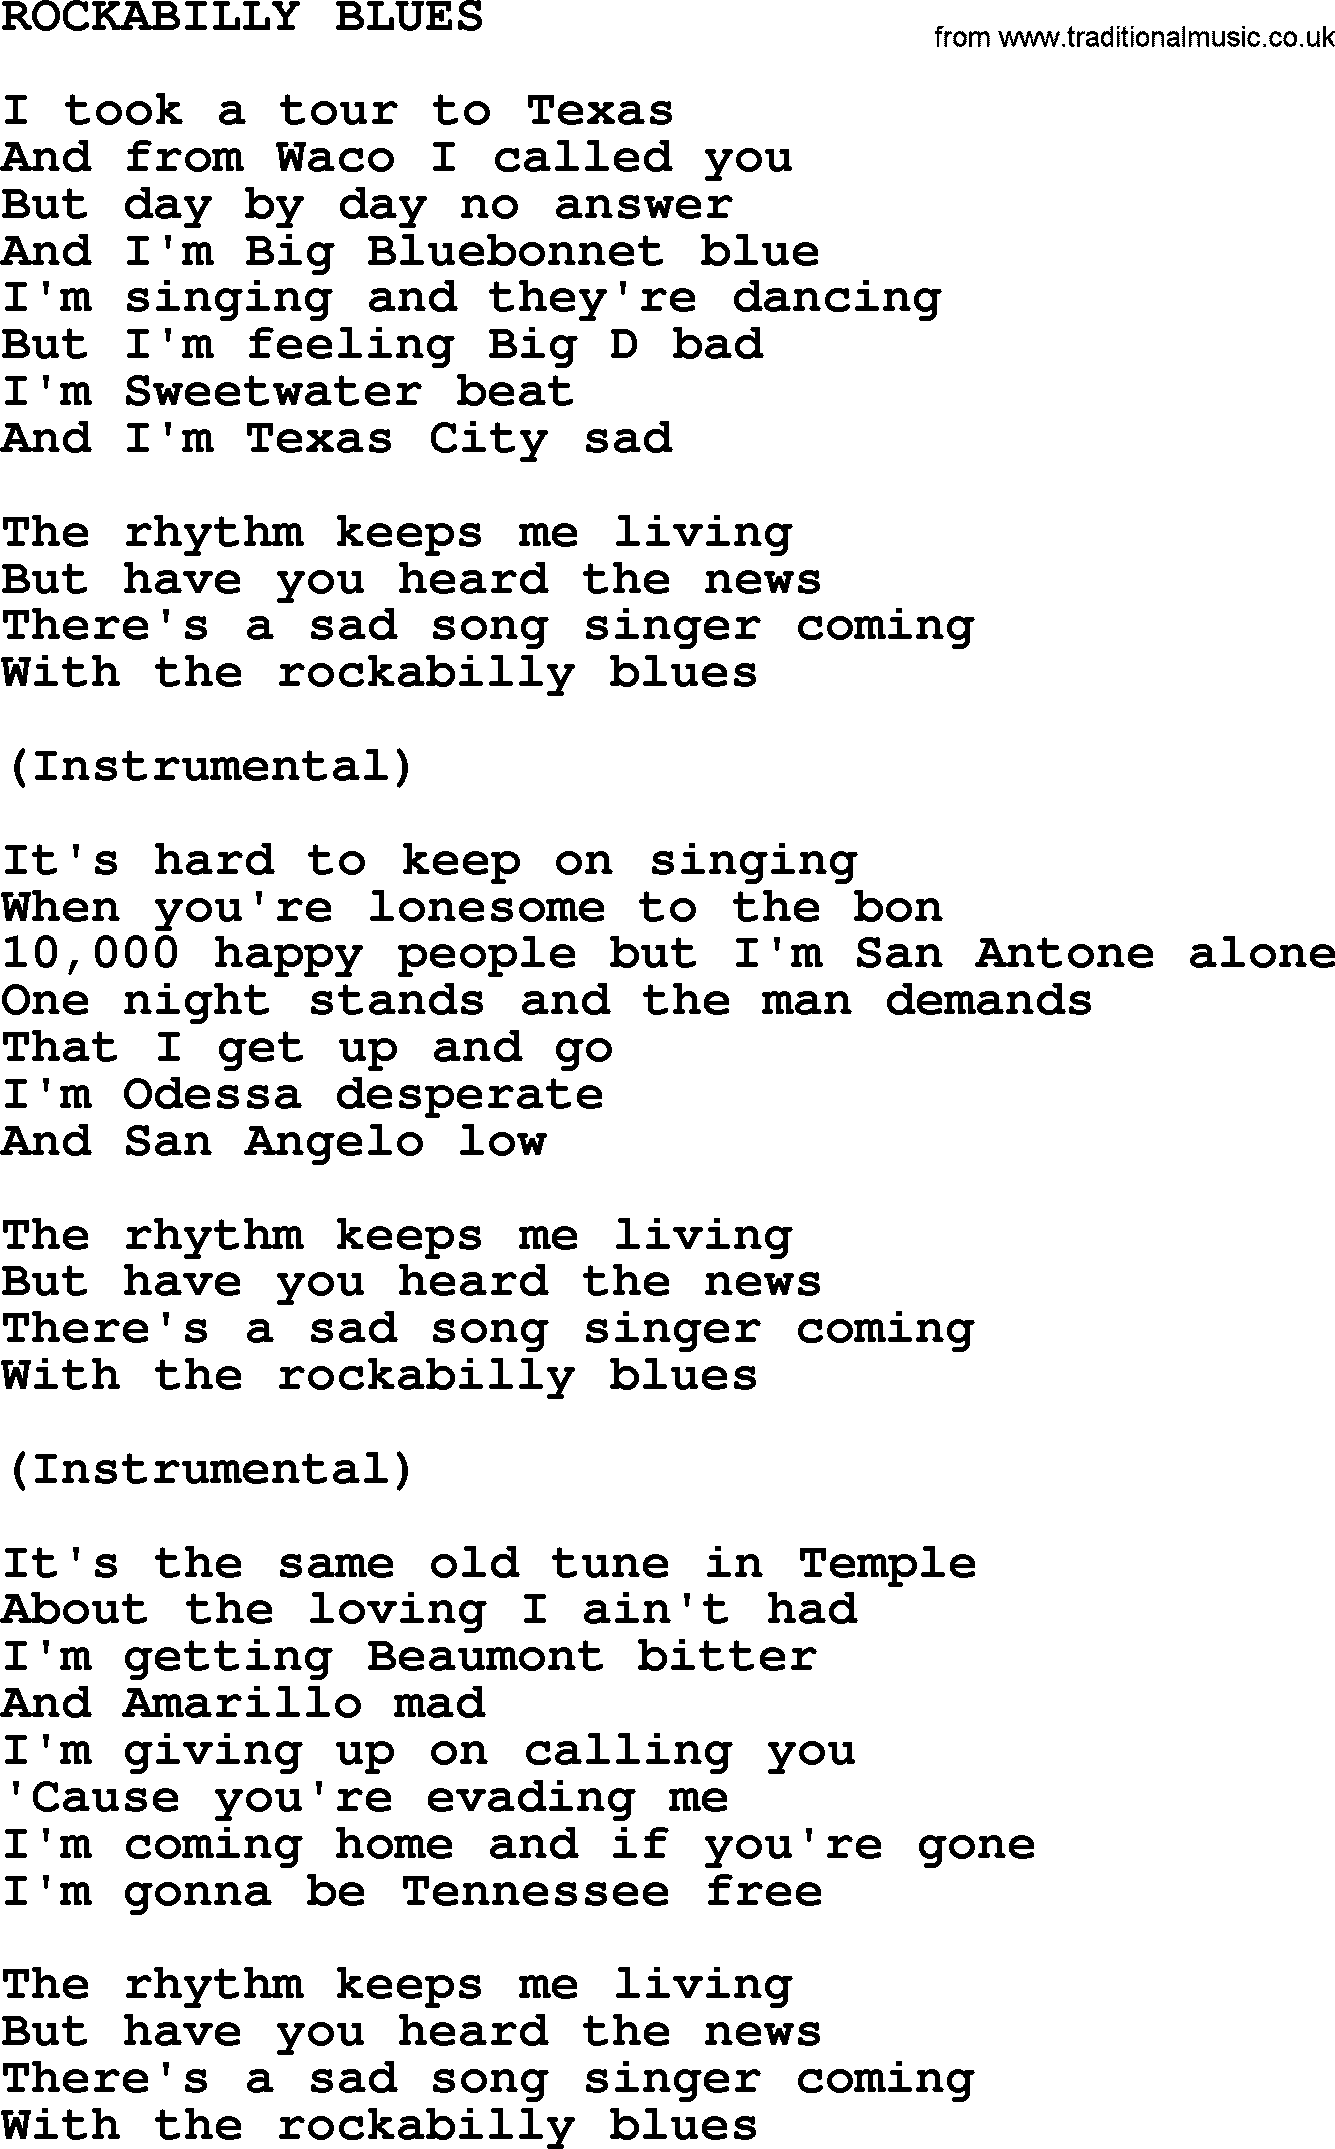 Johnny Cash song Rockabilly Blues.txt lyrics